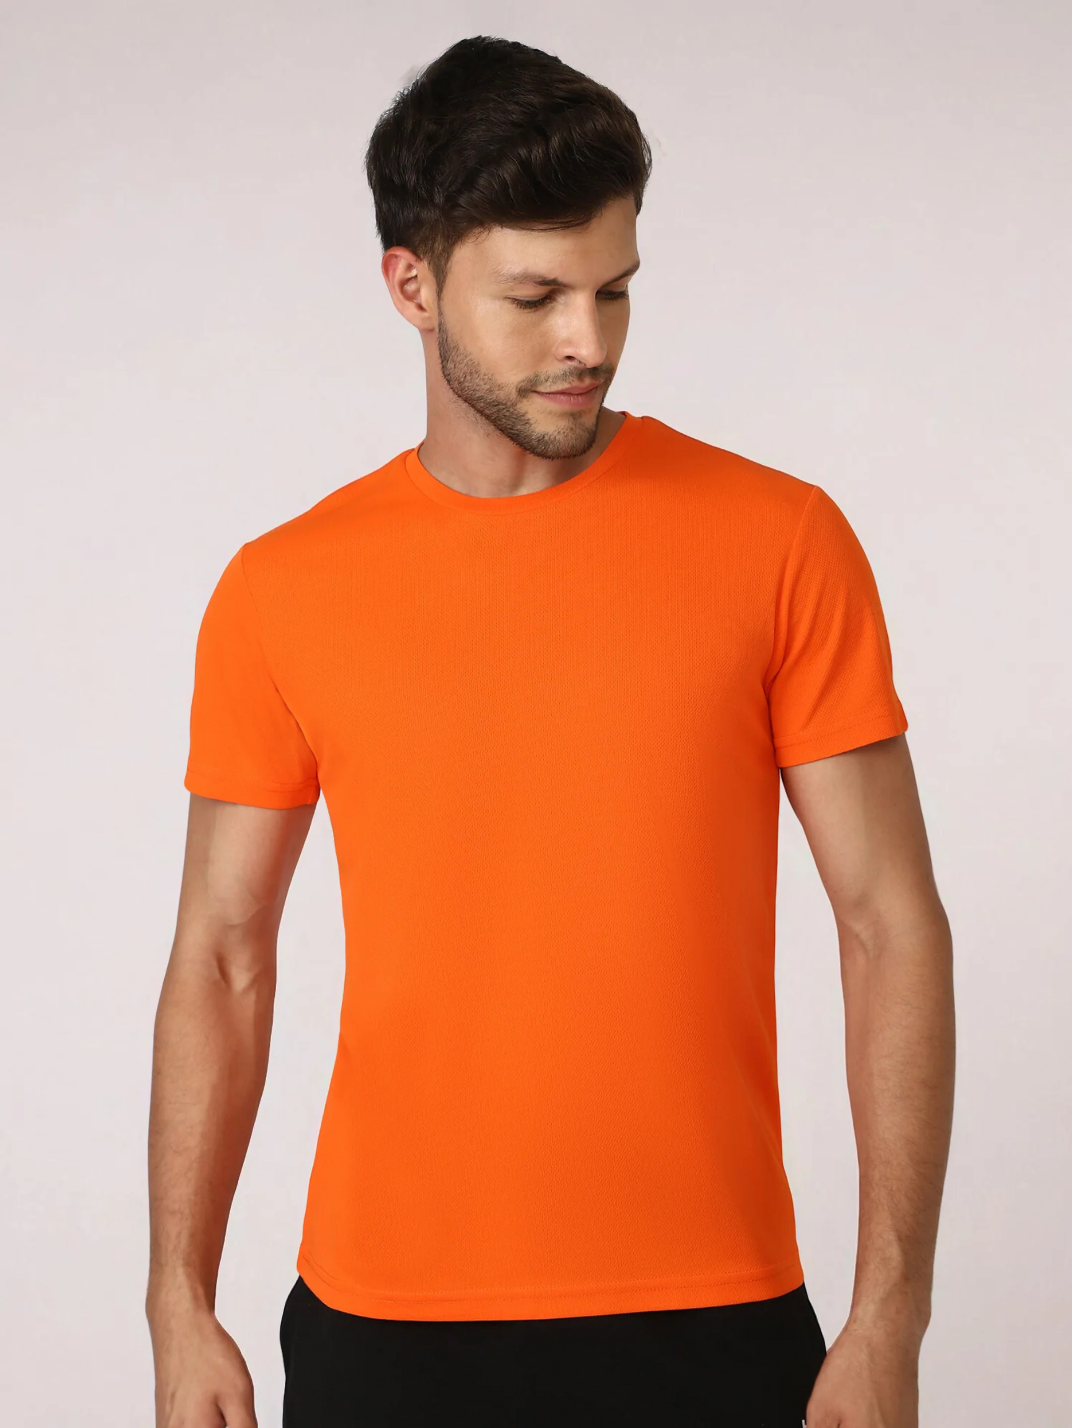 Budoc Men's Polyester T-shirt for men in Orange